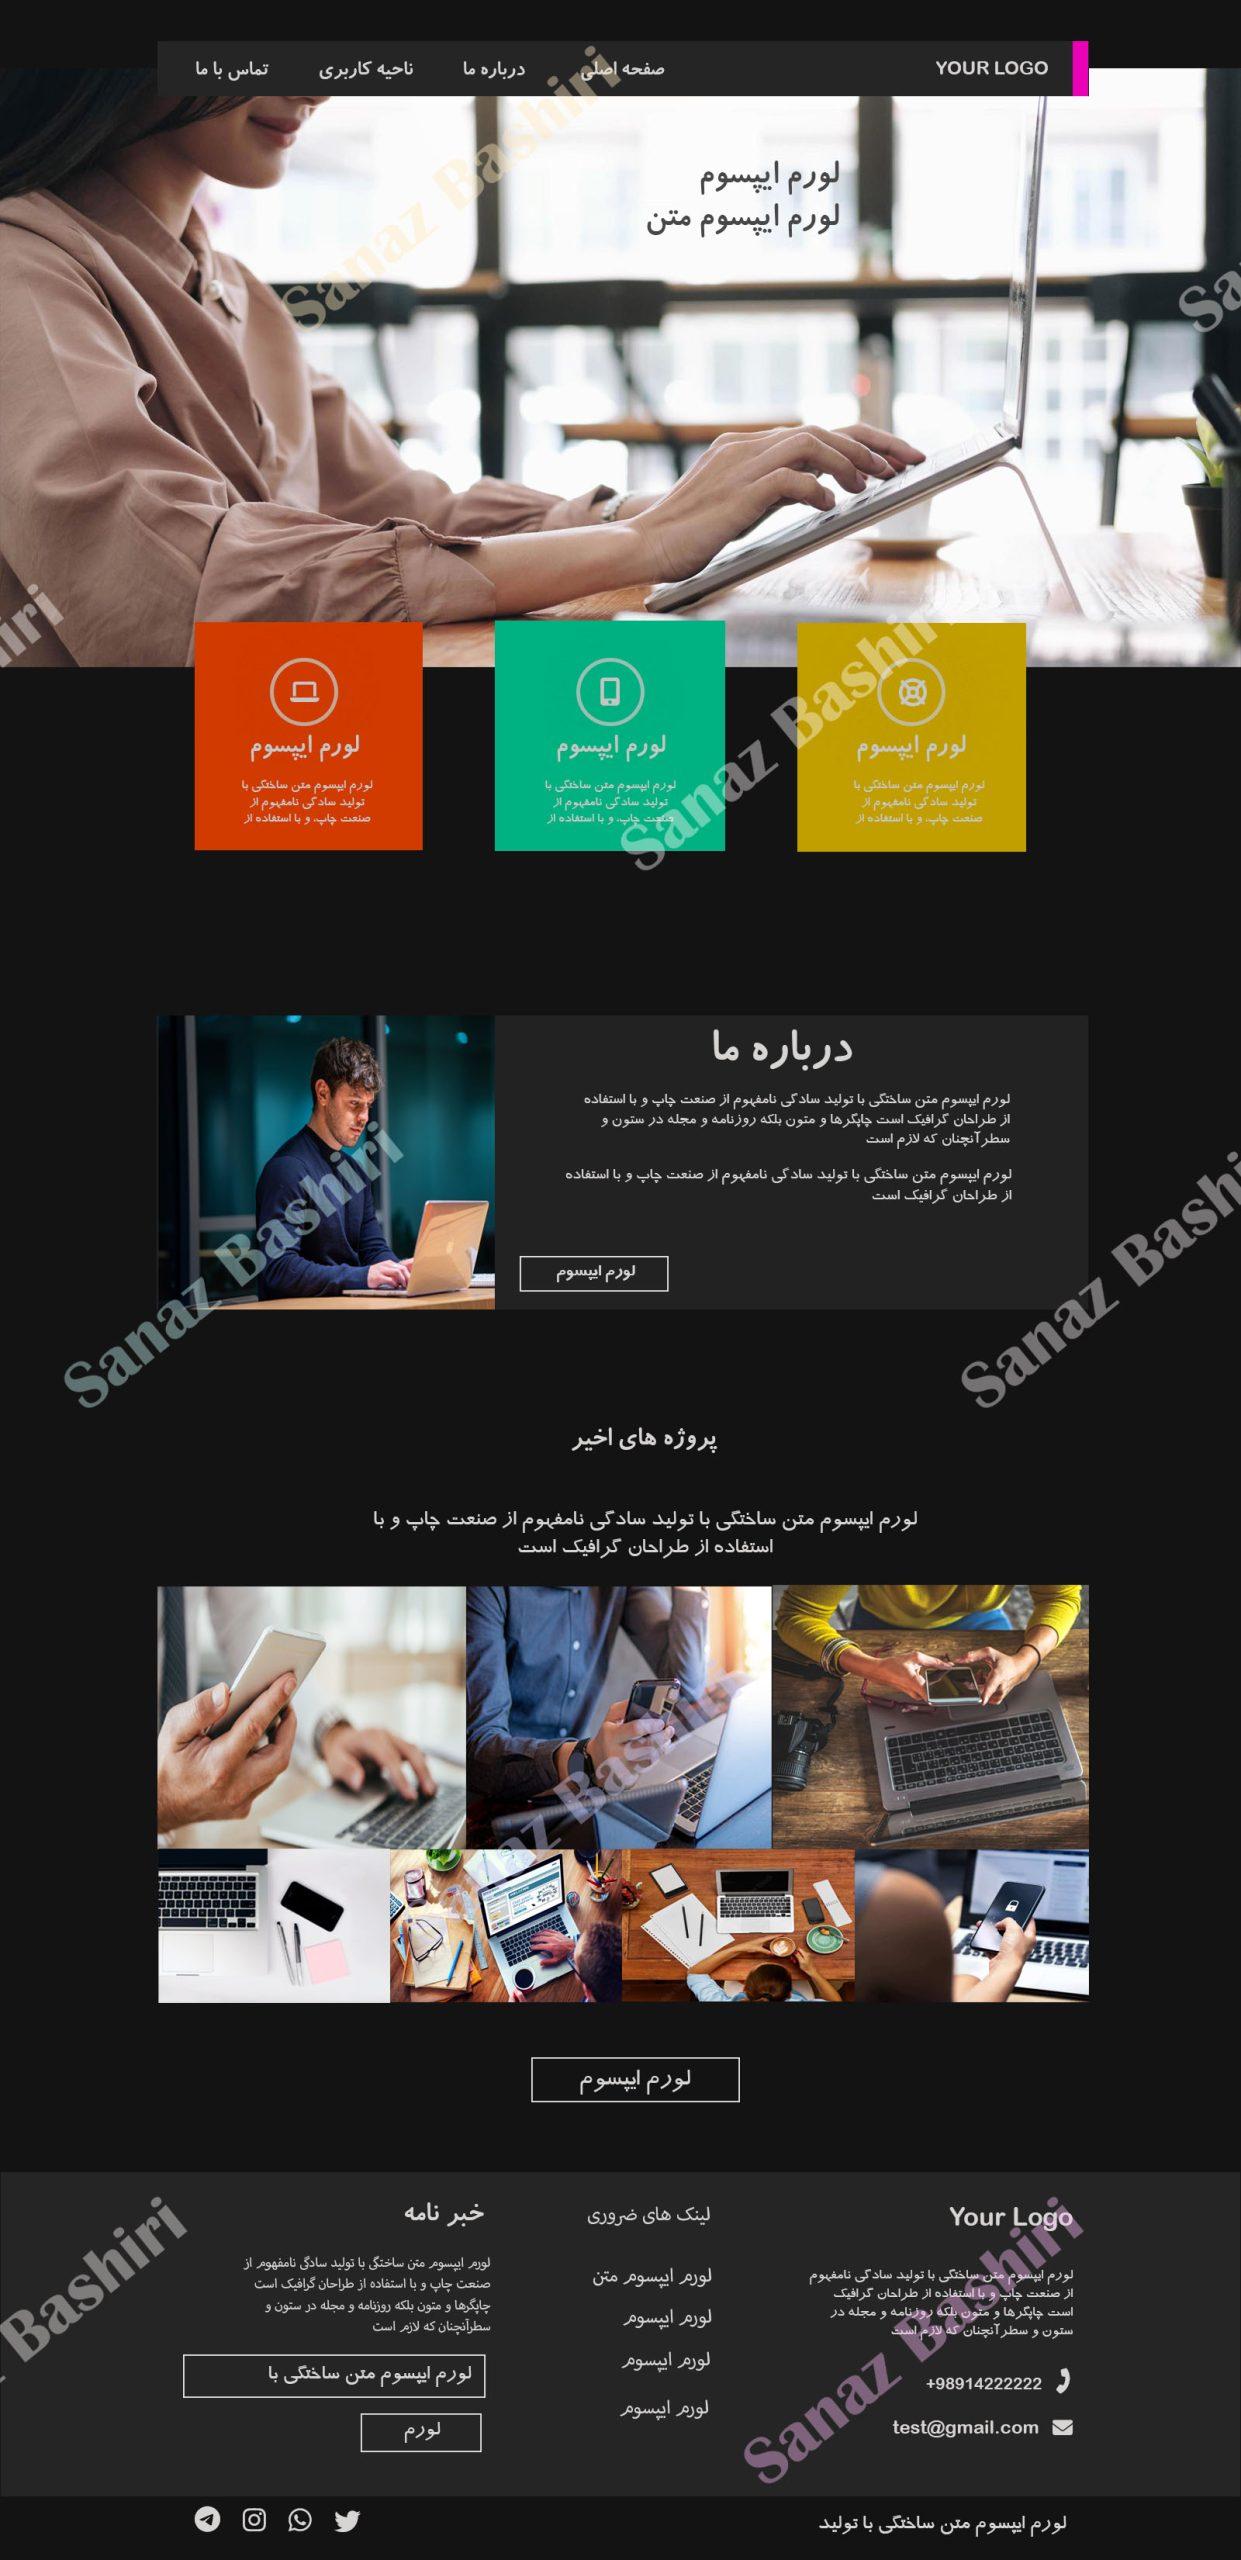 نمونه کار طراحی سایت کارآموزان طزاحی سایت در تبریز